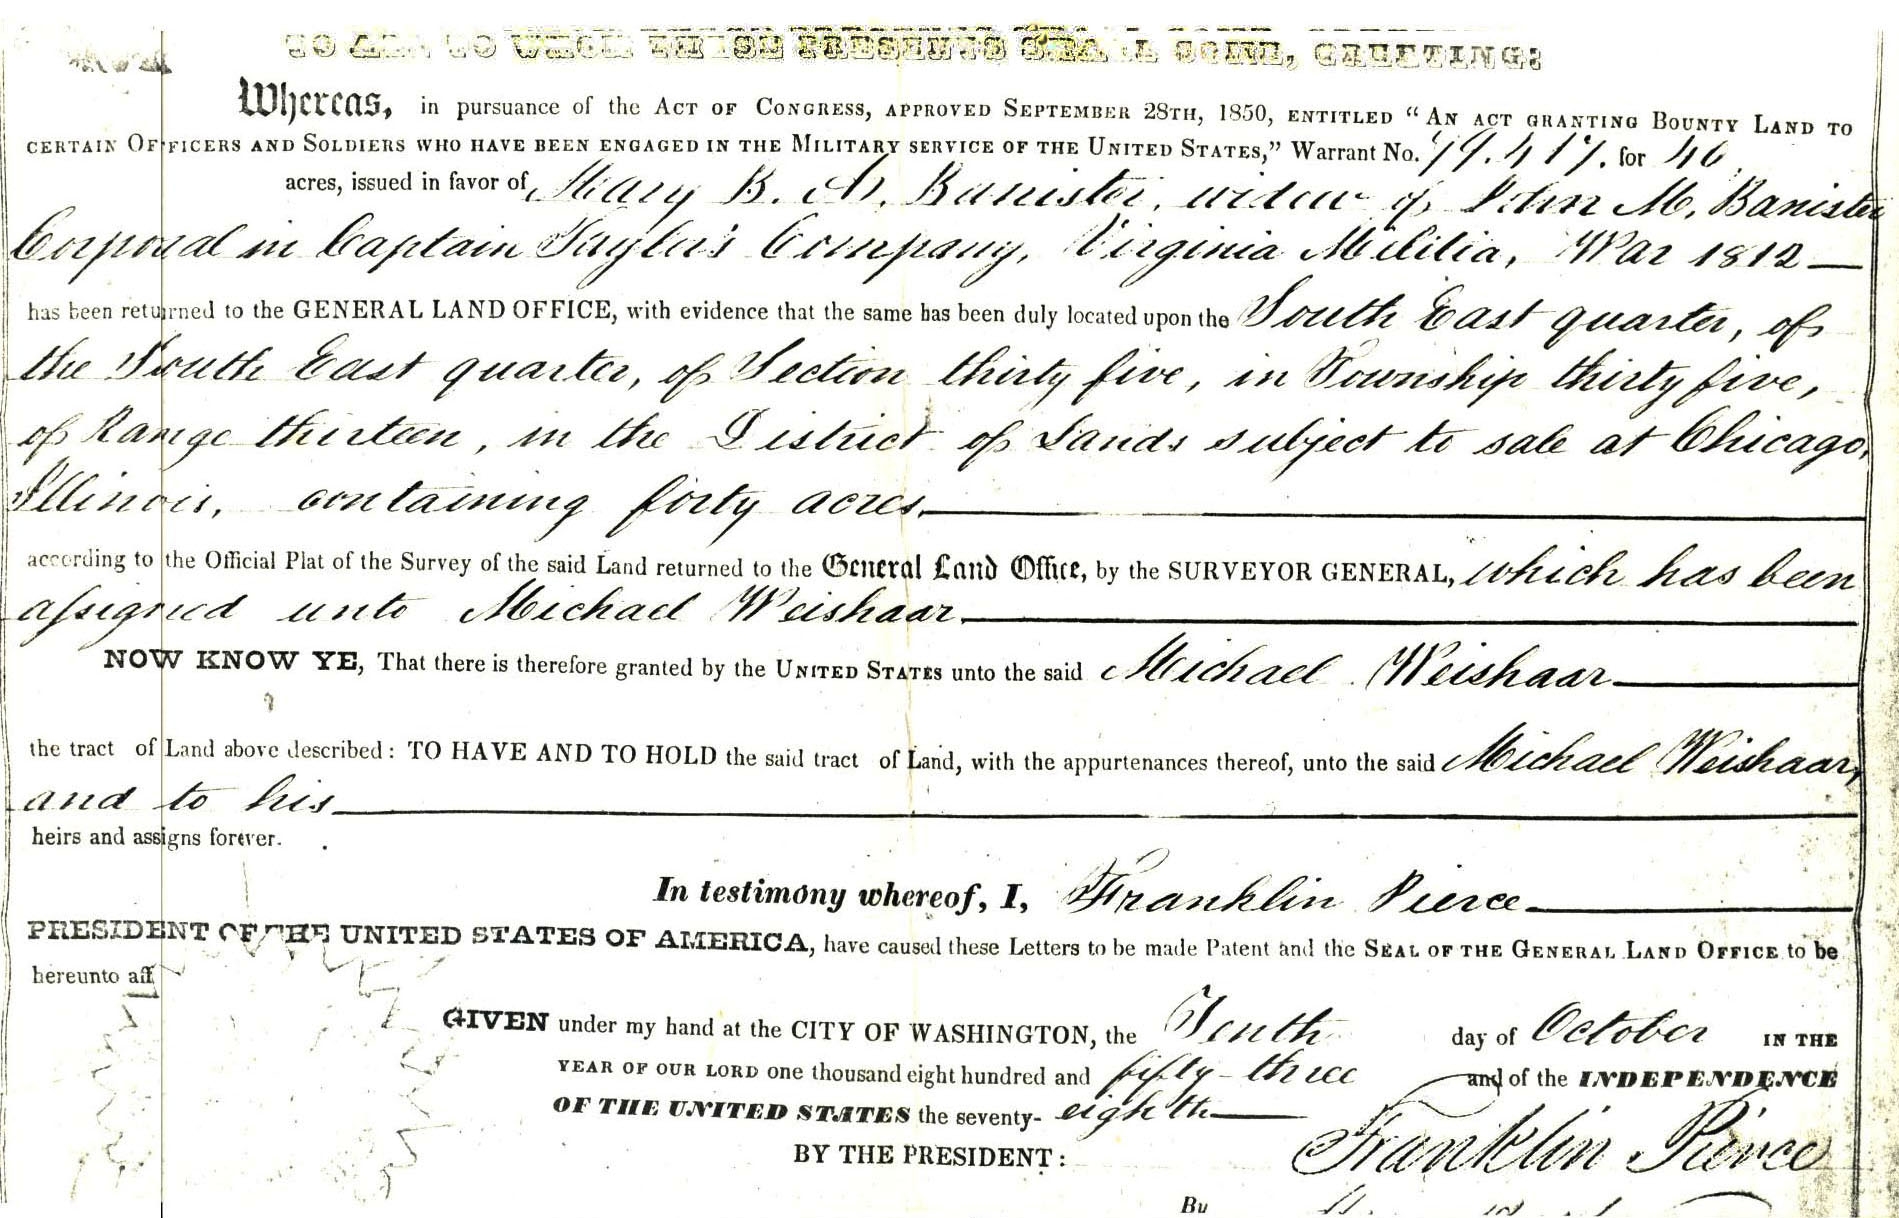 Michael Weishaar Land Grant,, Illinois 1855